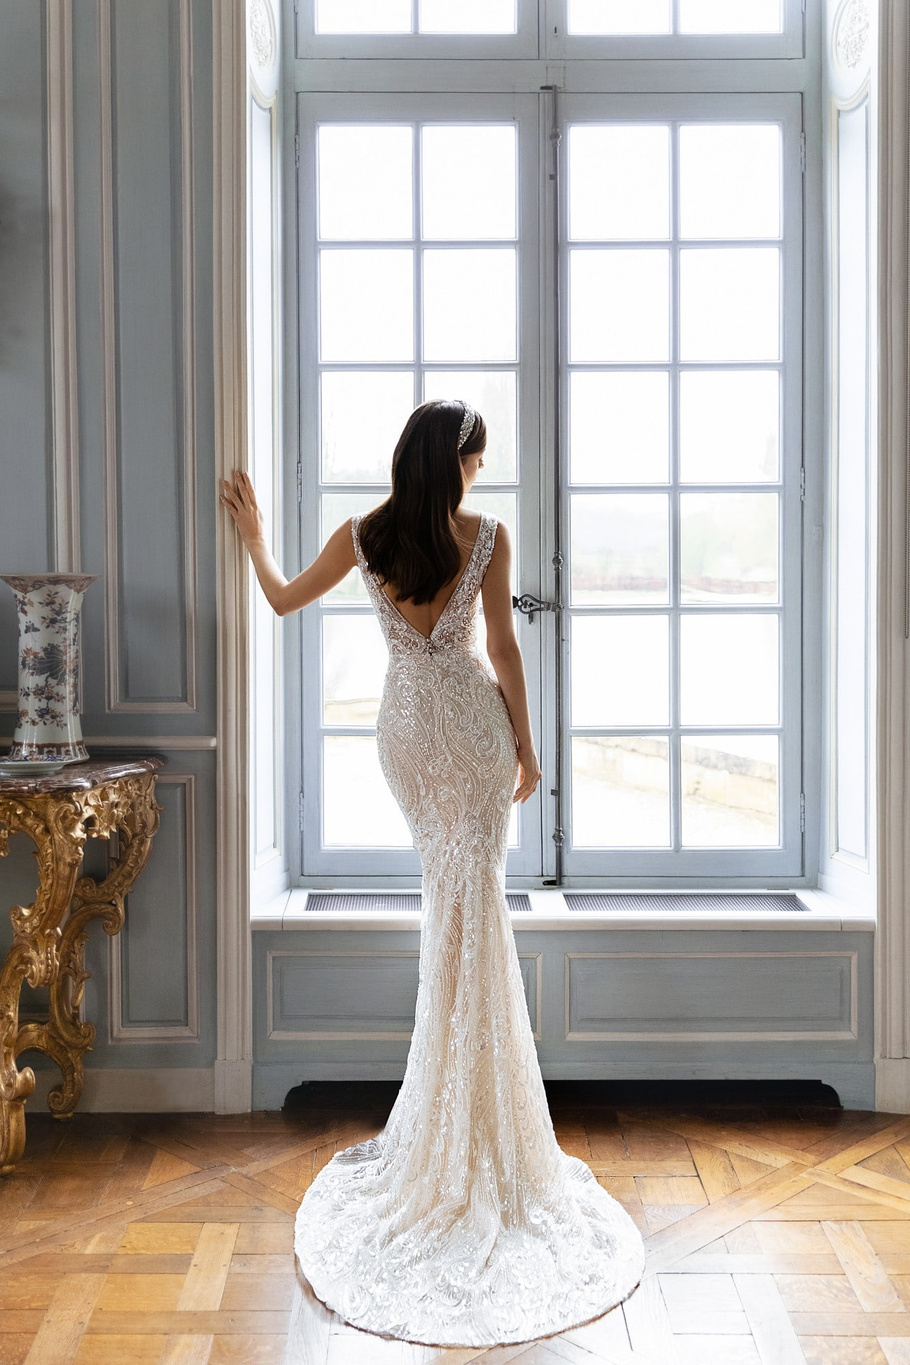 Купить свадебное платье Джоли Дарья Карлози из коллекции 2021 года в салоне «Мэри Трюфель»